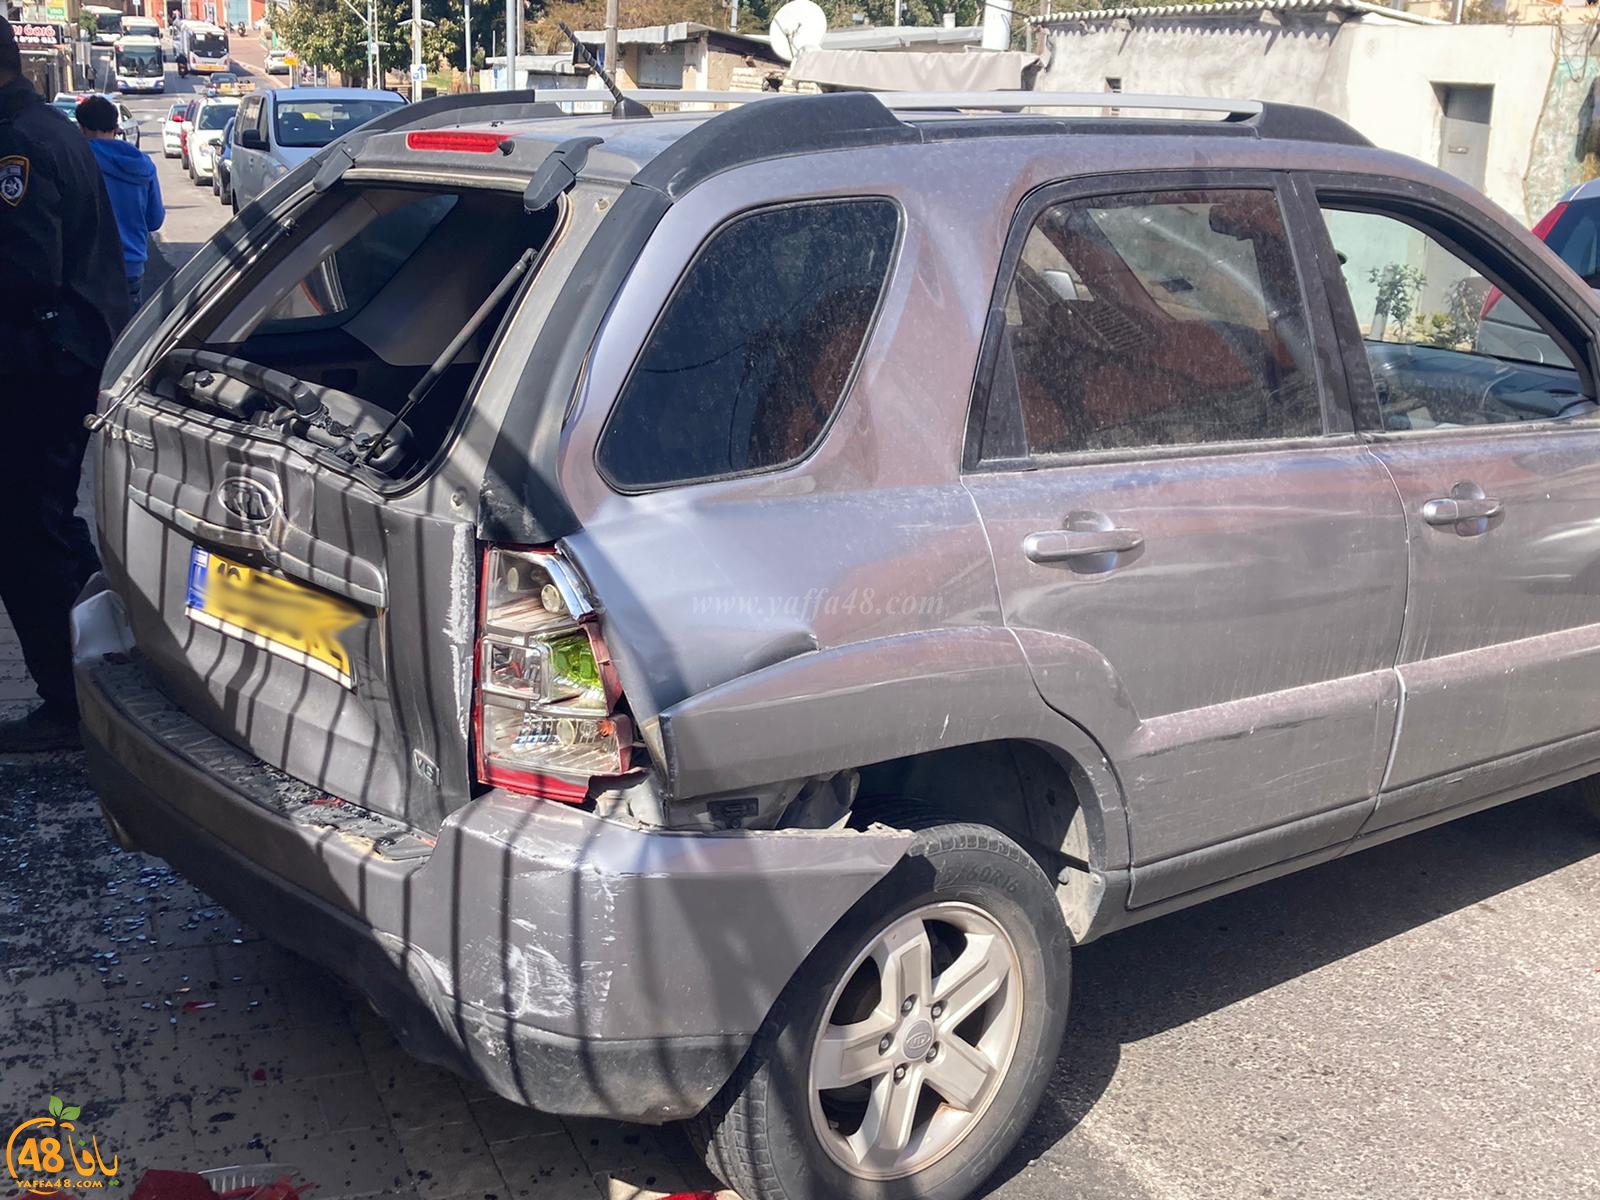   يافا: اصابة متوسطة لسيدة بحادث طرق بين مركبتين 